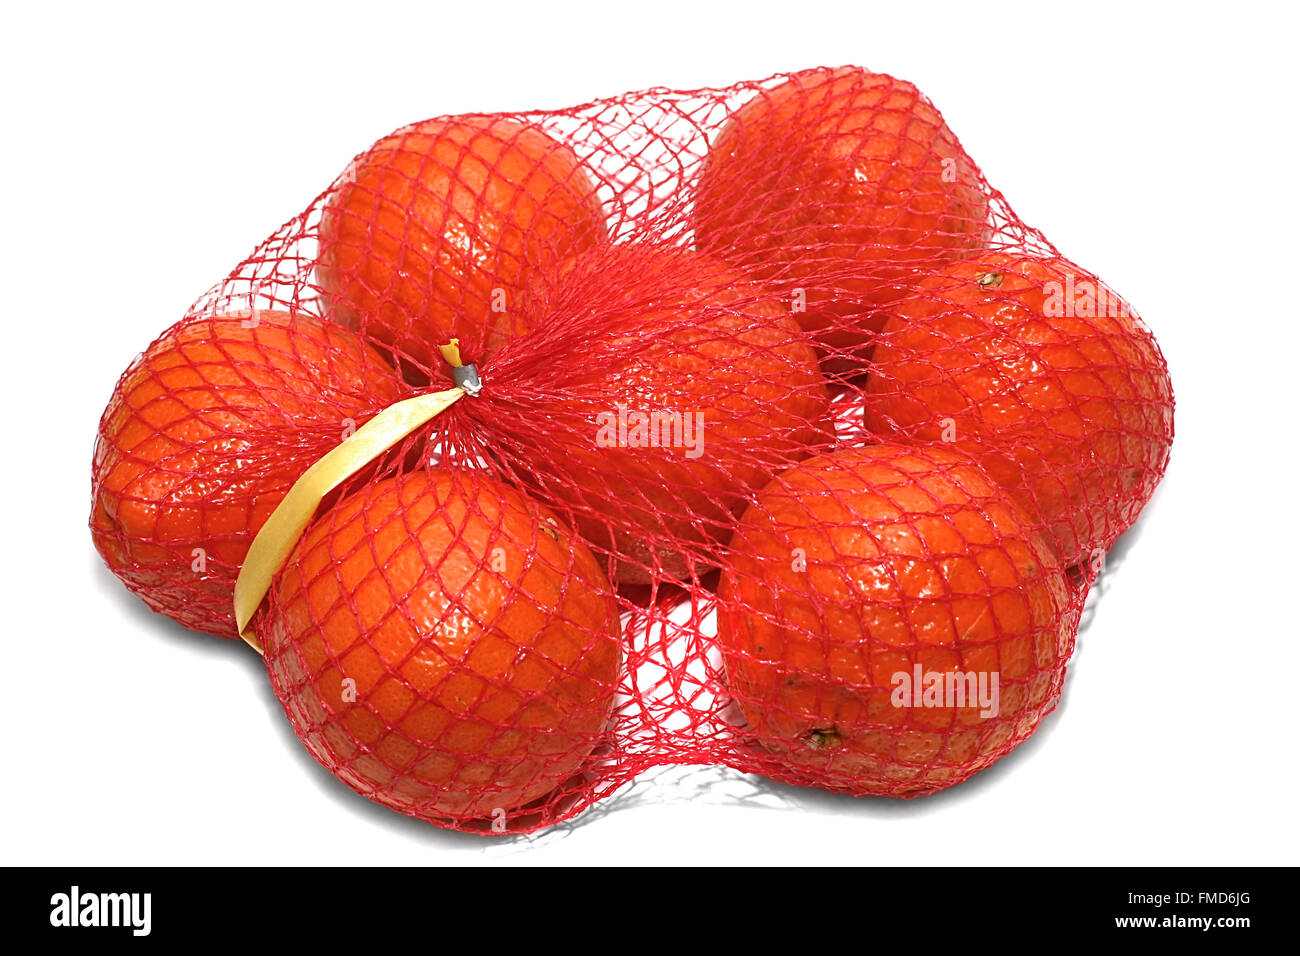 Las naranjas en el embalaje sobre un fondo blanco. Foto de stock